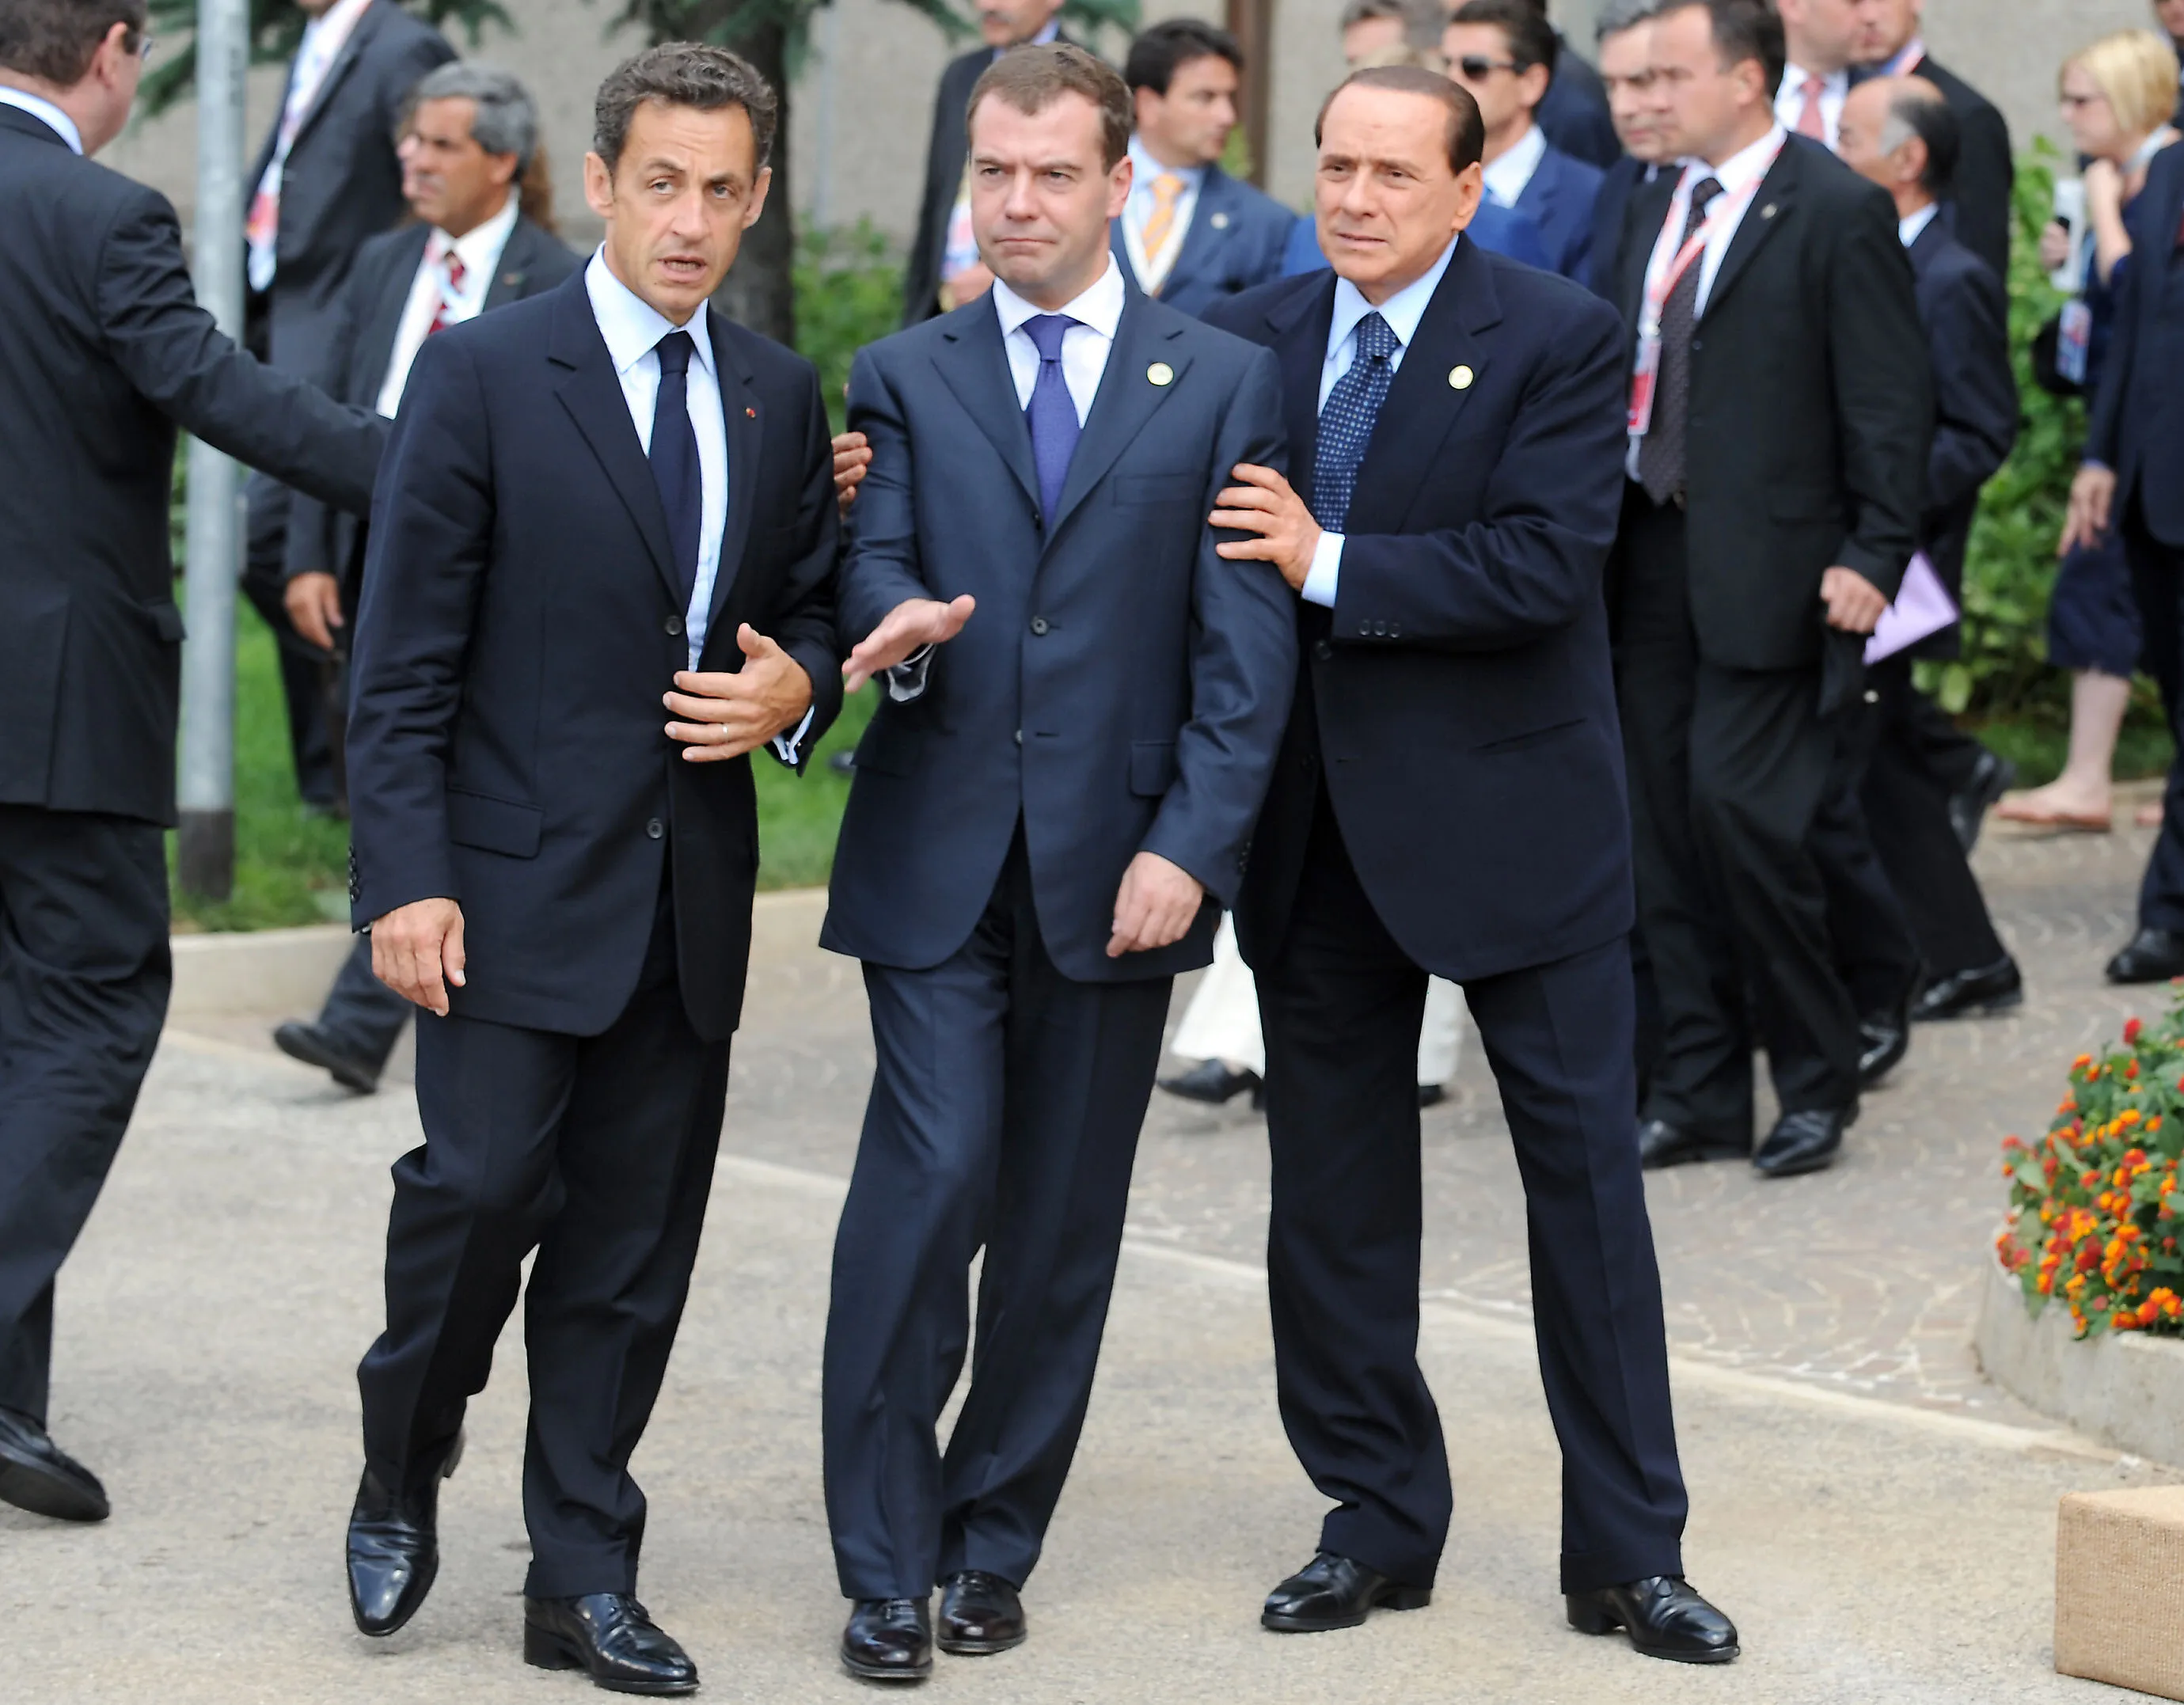 Когда русские вновь стали хозяевами в стране. Медведев Берлускони Саркози. Берлускони 2010 g8 Summit. Саркози Медведев Берлускони Обама.